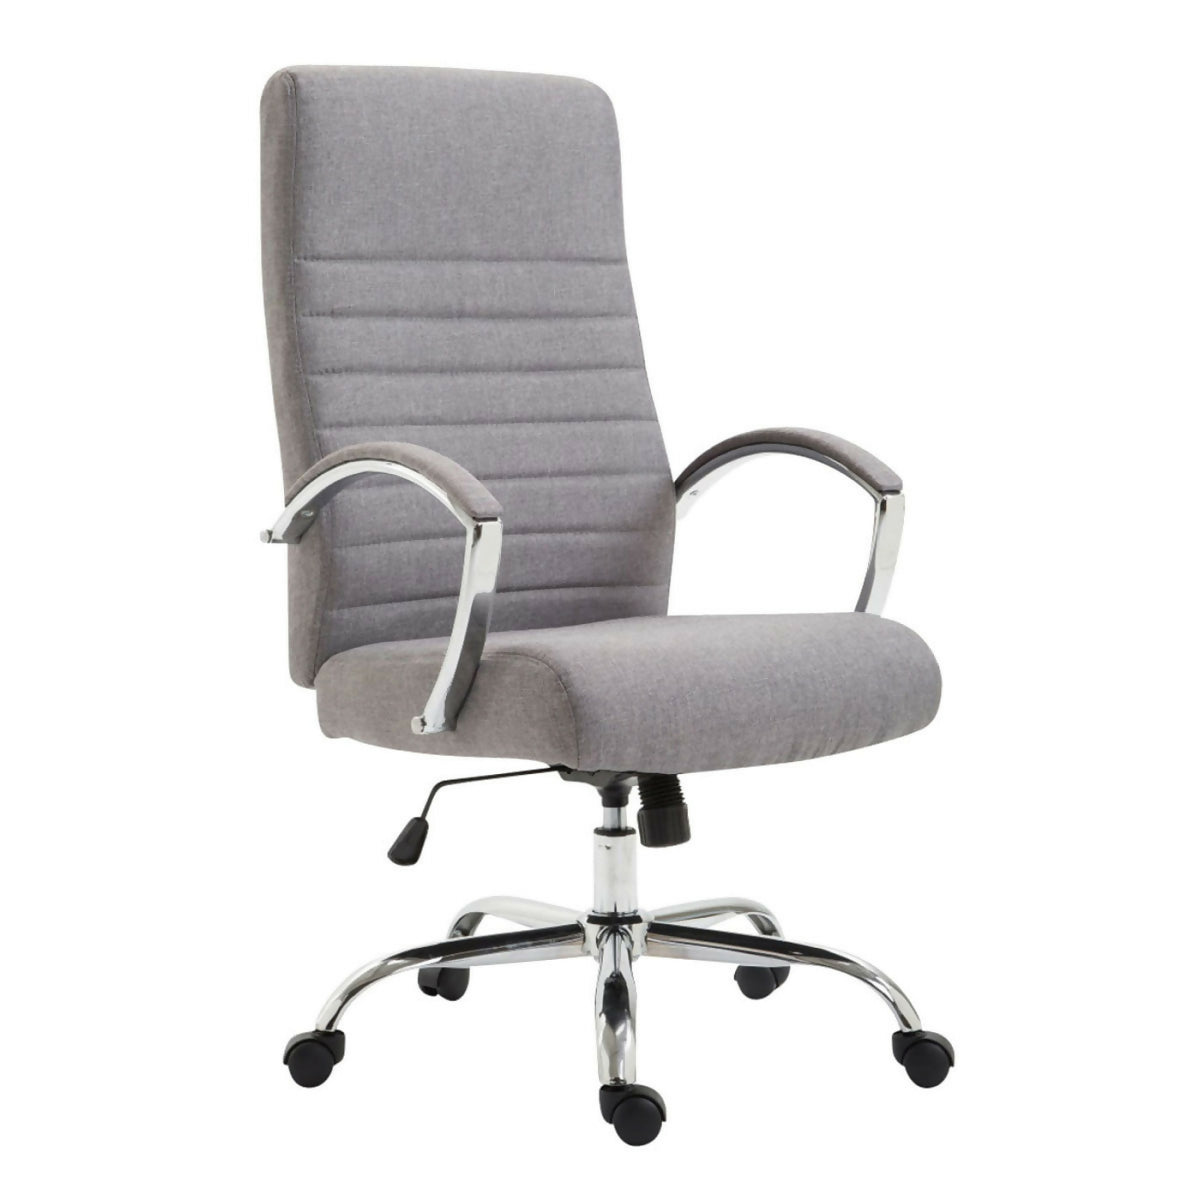 Valais office armchair - Gray Fabric